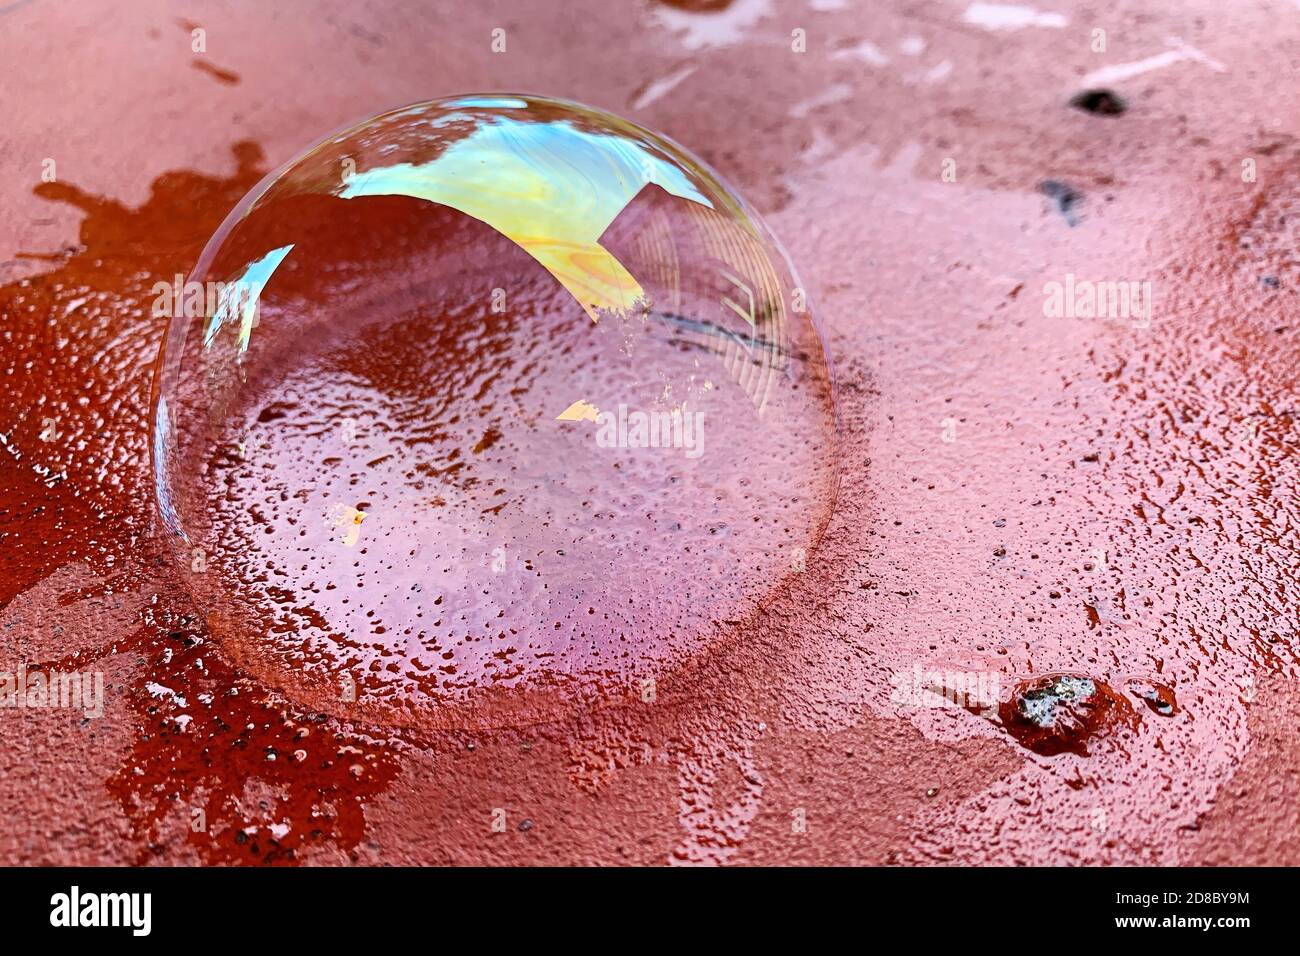 La burbuja de jabón se encuentra en una superficie de ladrillo rojo. Superficie jabonosa transparente con colores y reflejos arcoiris Foto de stock